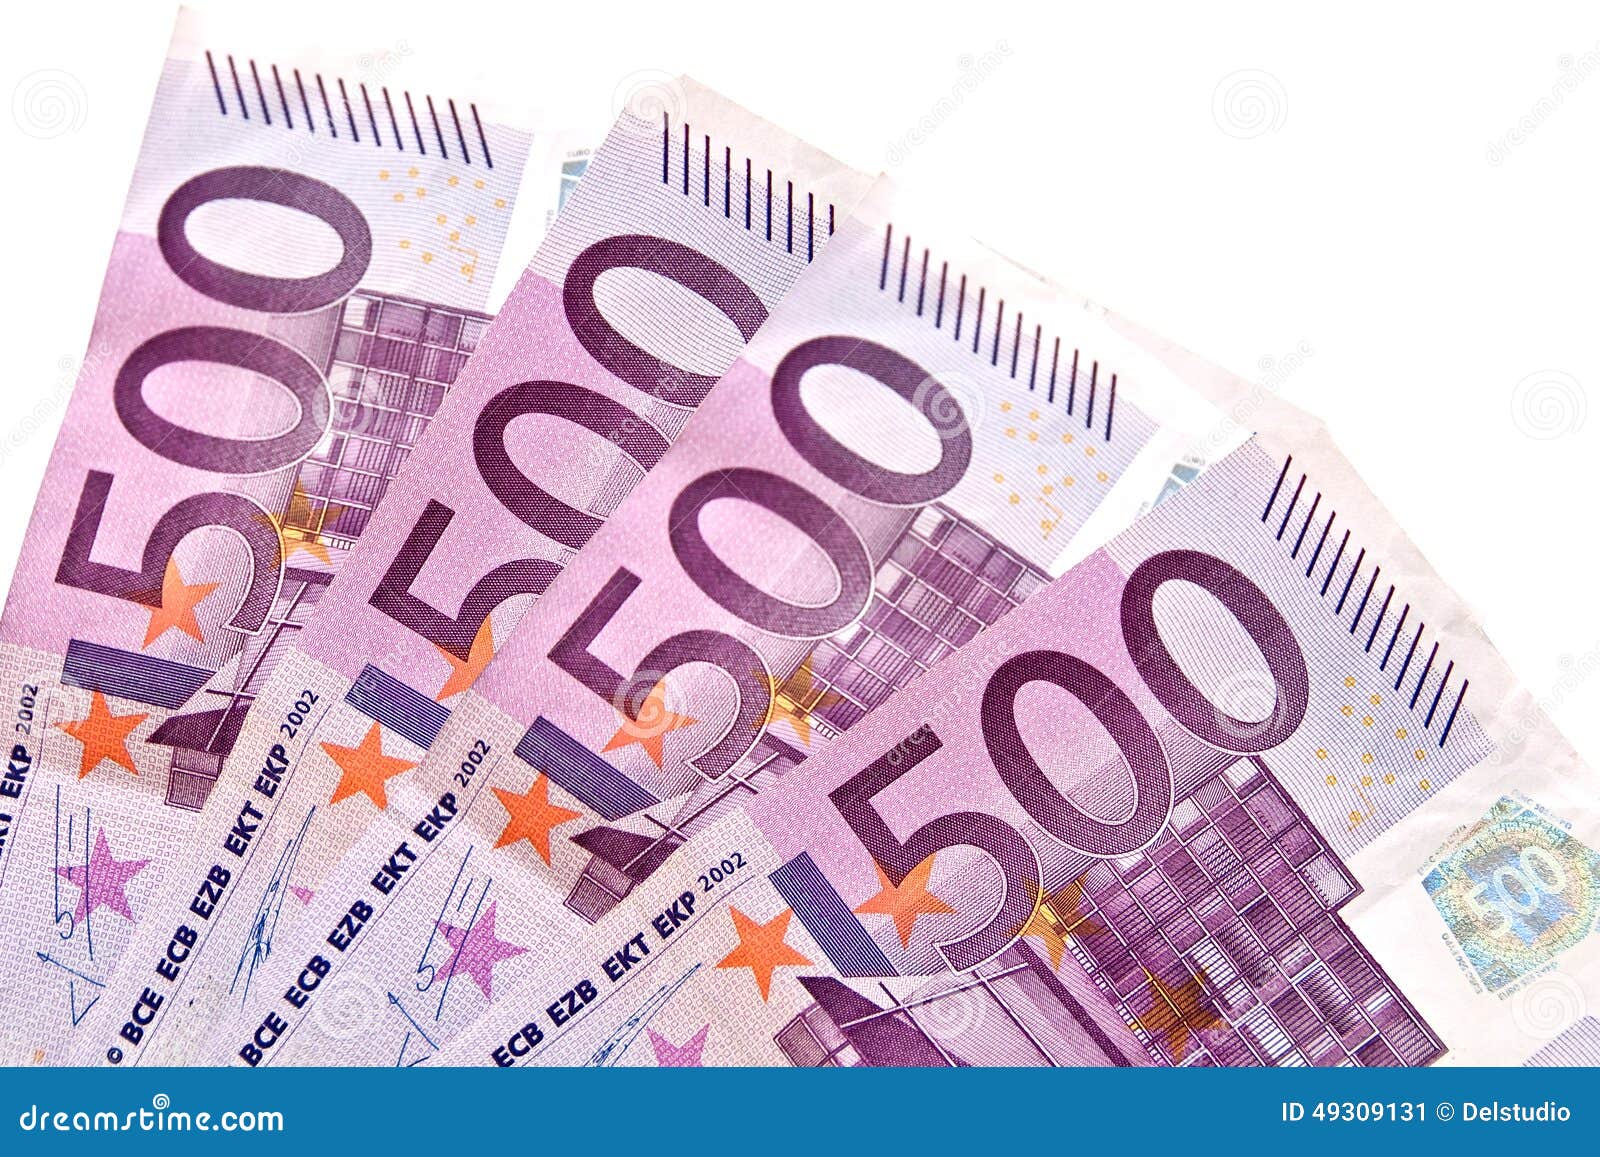 Крупная купюра евро. 2000 Евро купюра. Купюра 500 евро. Банкнота 1000 евро. Купюра евро иллюстрация.